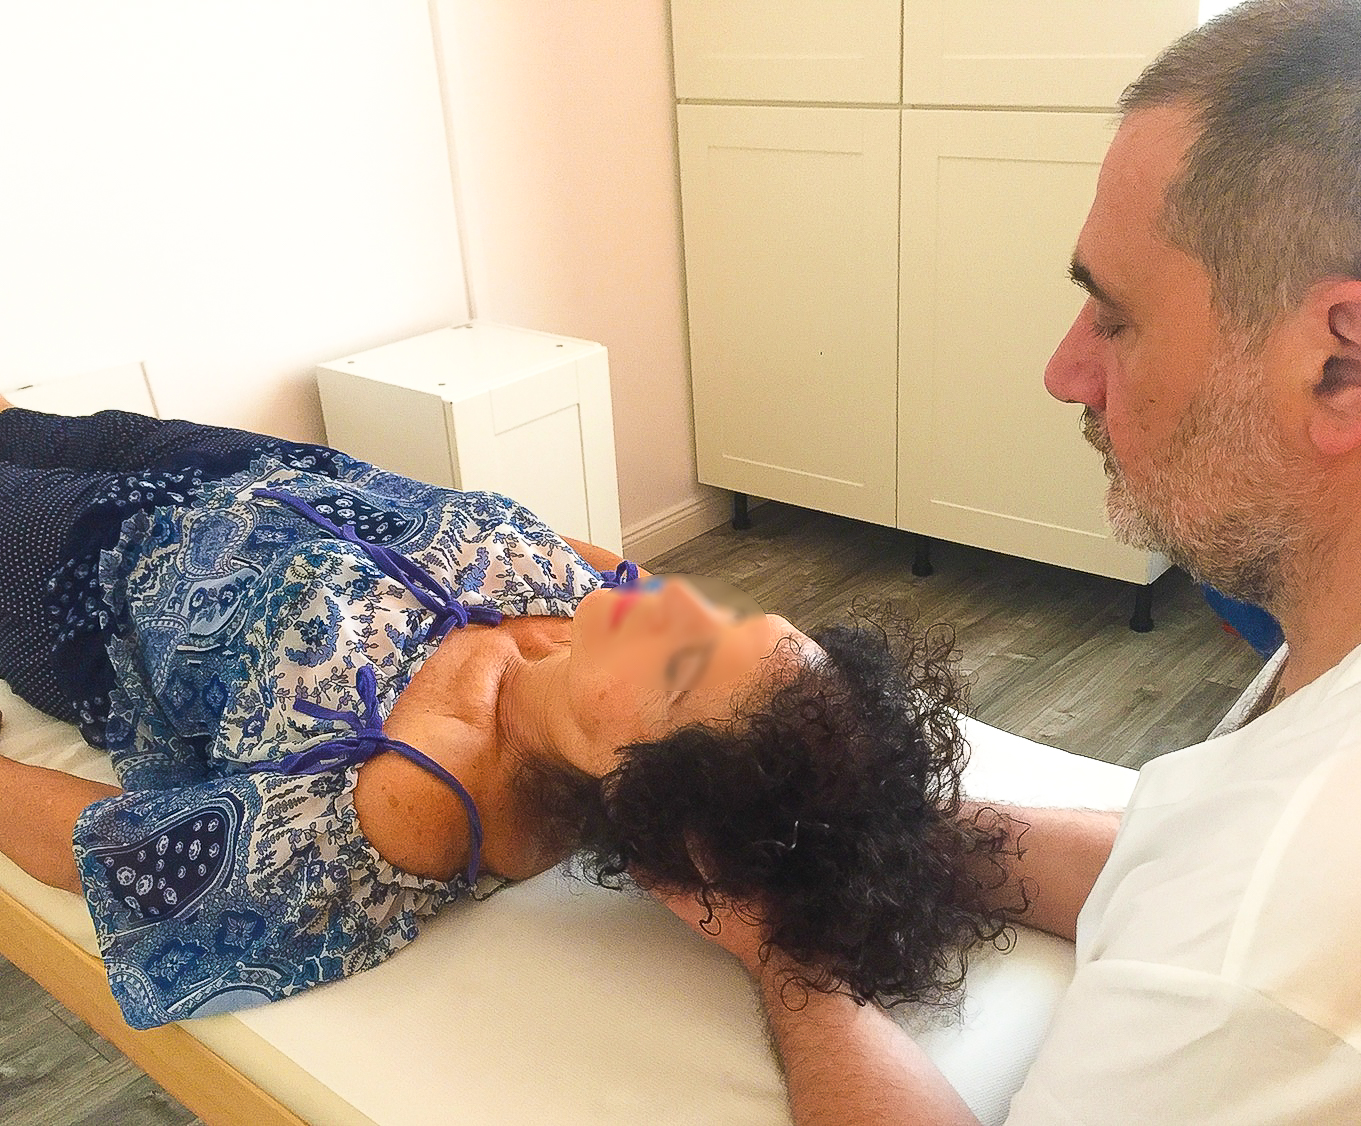 Viene eseguita una trattamento cranio sacrale presso Studio Vircos a Roma San Giovanni dal Dottor Roberto Monaco, Fisioterapista e operatore craniosacrale